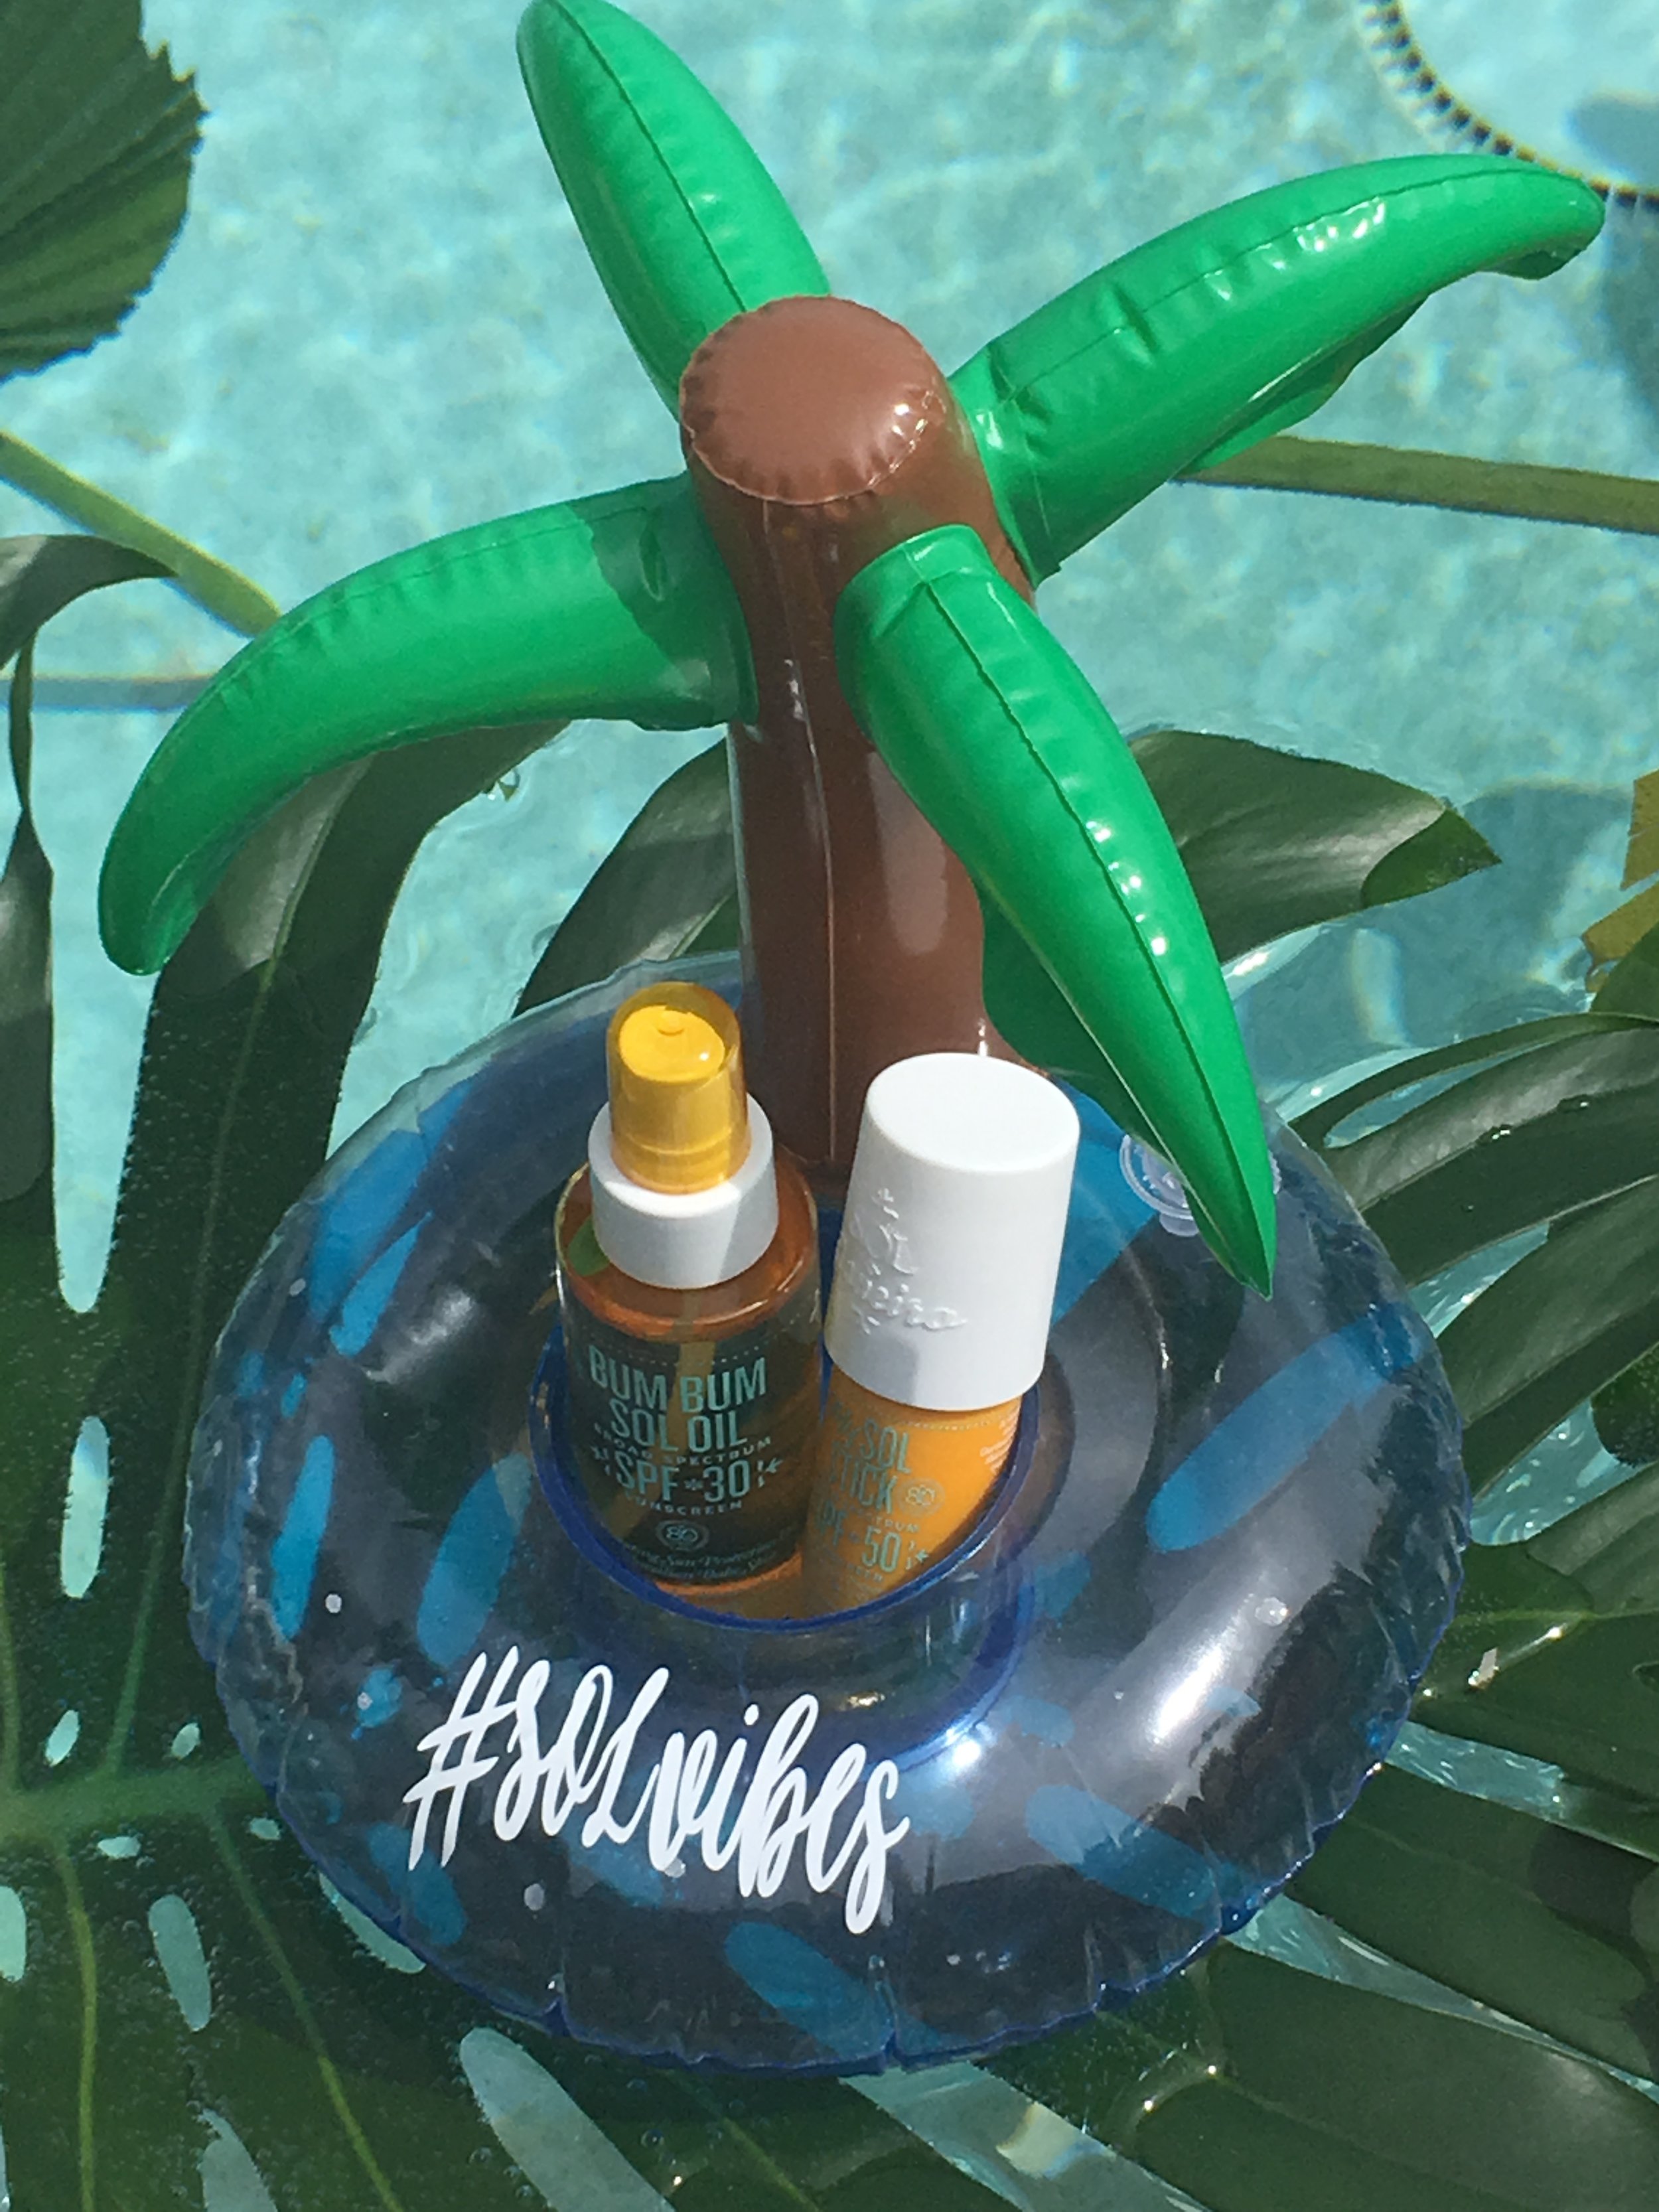 pool-floatie-sun-screen-palm-tree-sol-de-janeiro